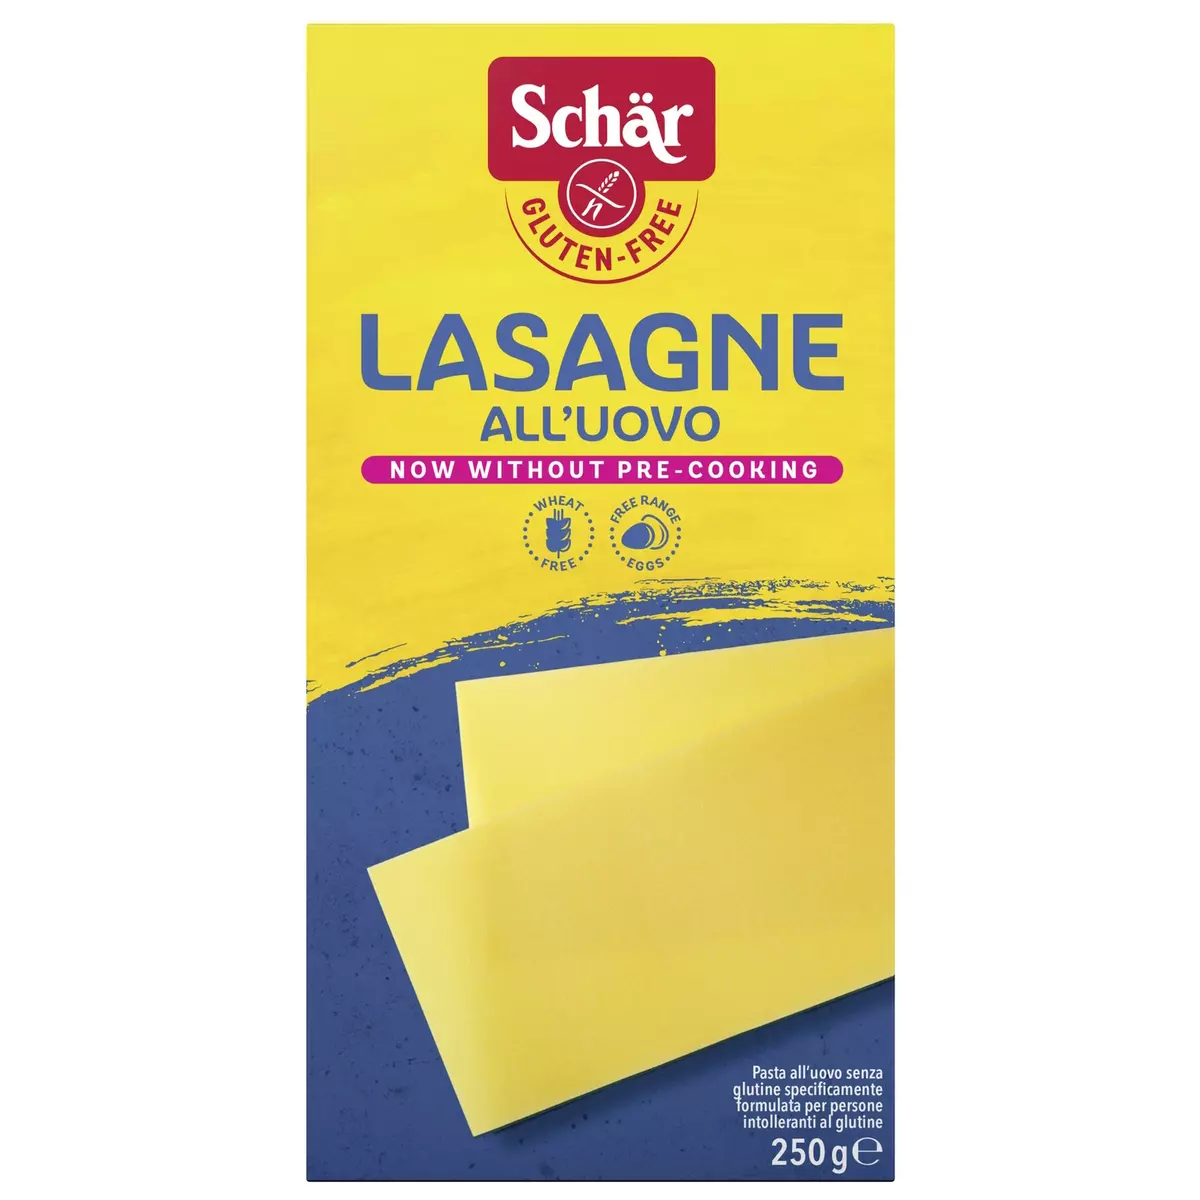 SCHAR Pâte lasagne all'uovo sans gluten 250g